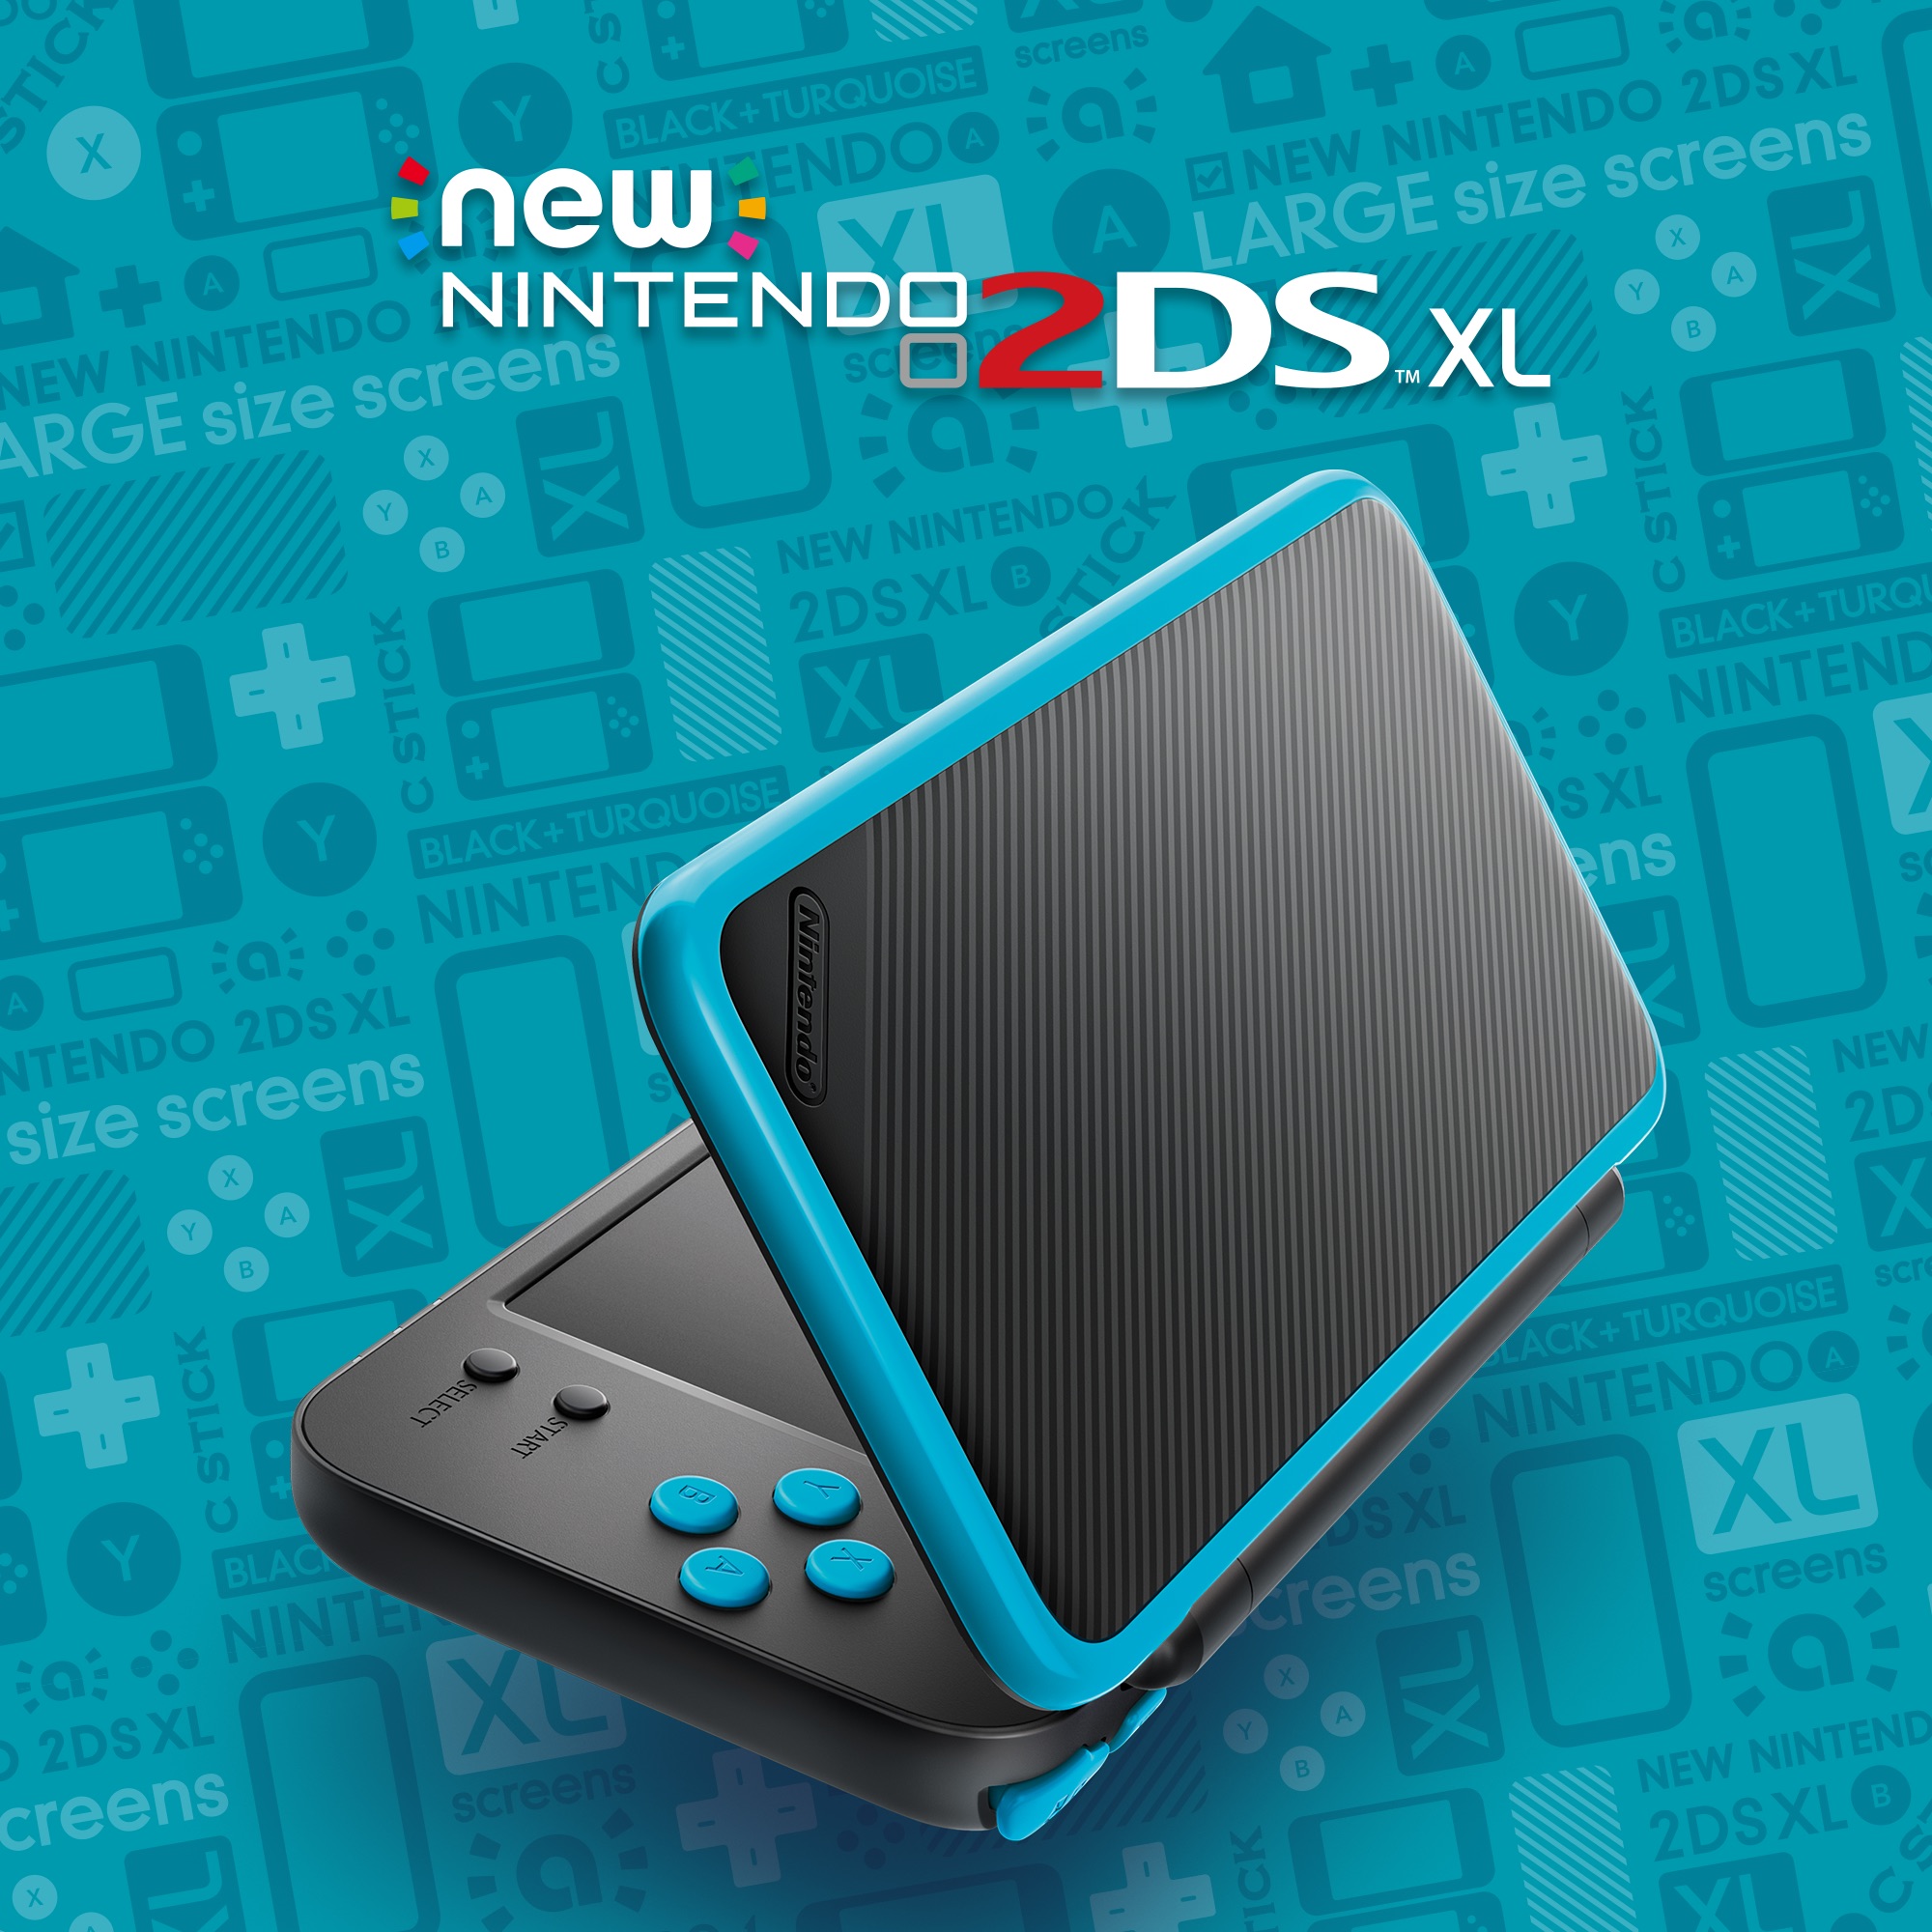 New Nintendo 2DS XL debutterà a fine luglio: le immagini ufficiali